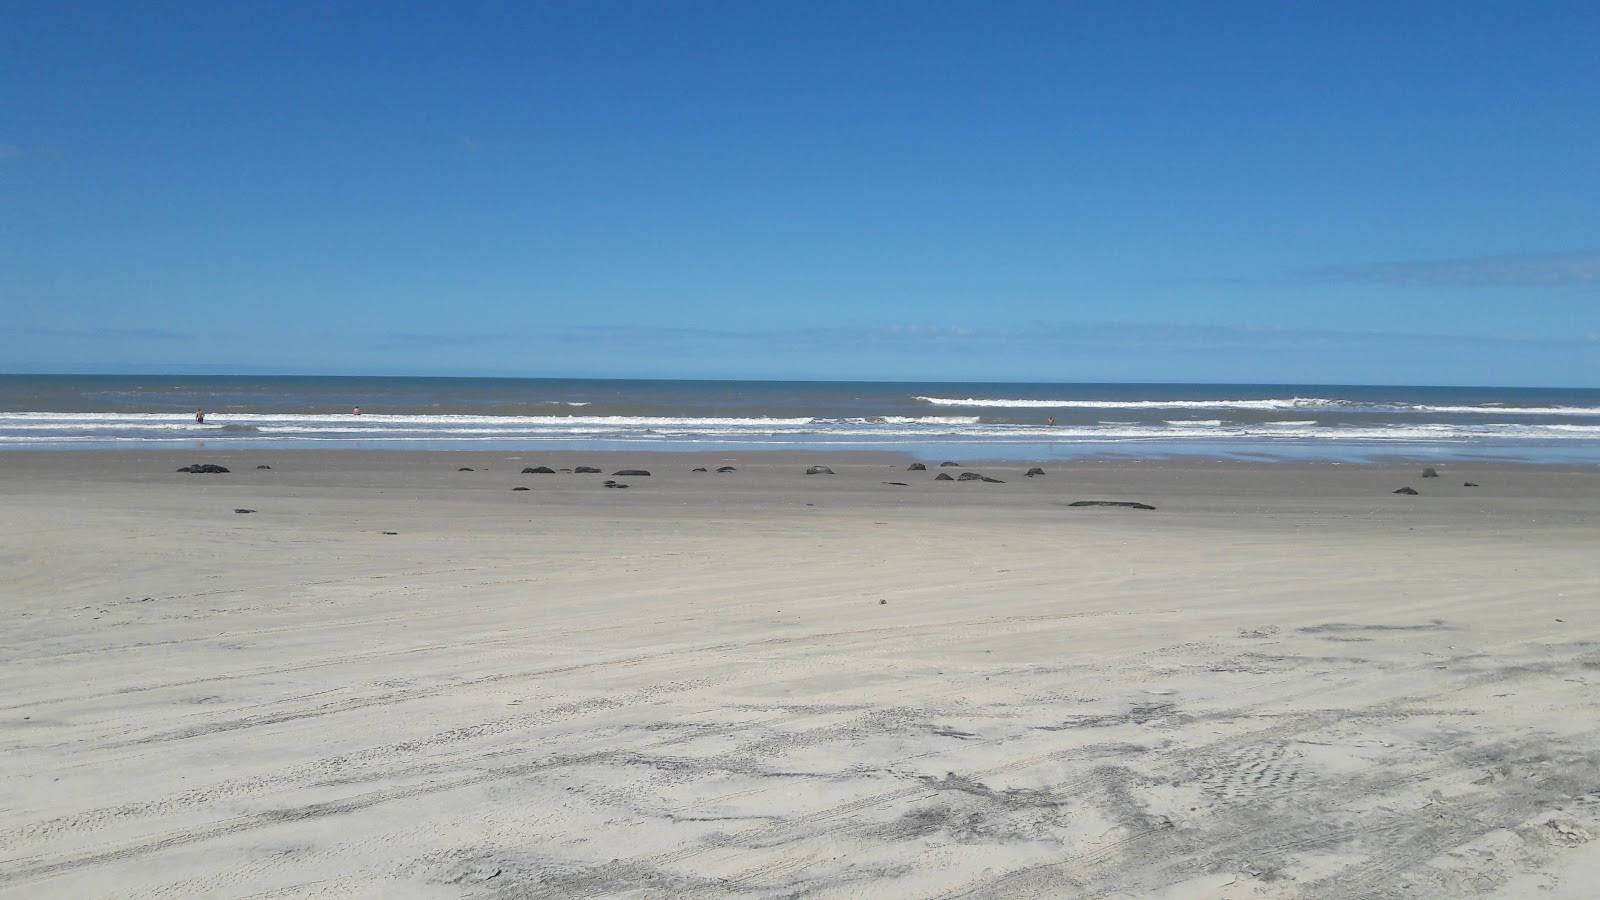 Foto von Maravilhas Strand mit langer gerader strand